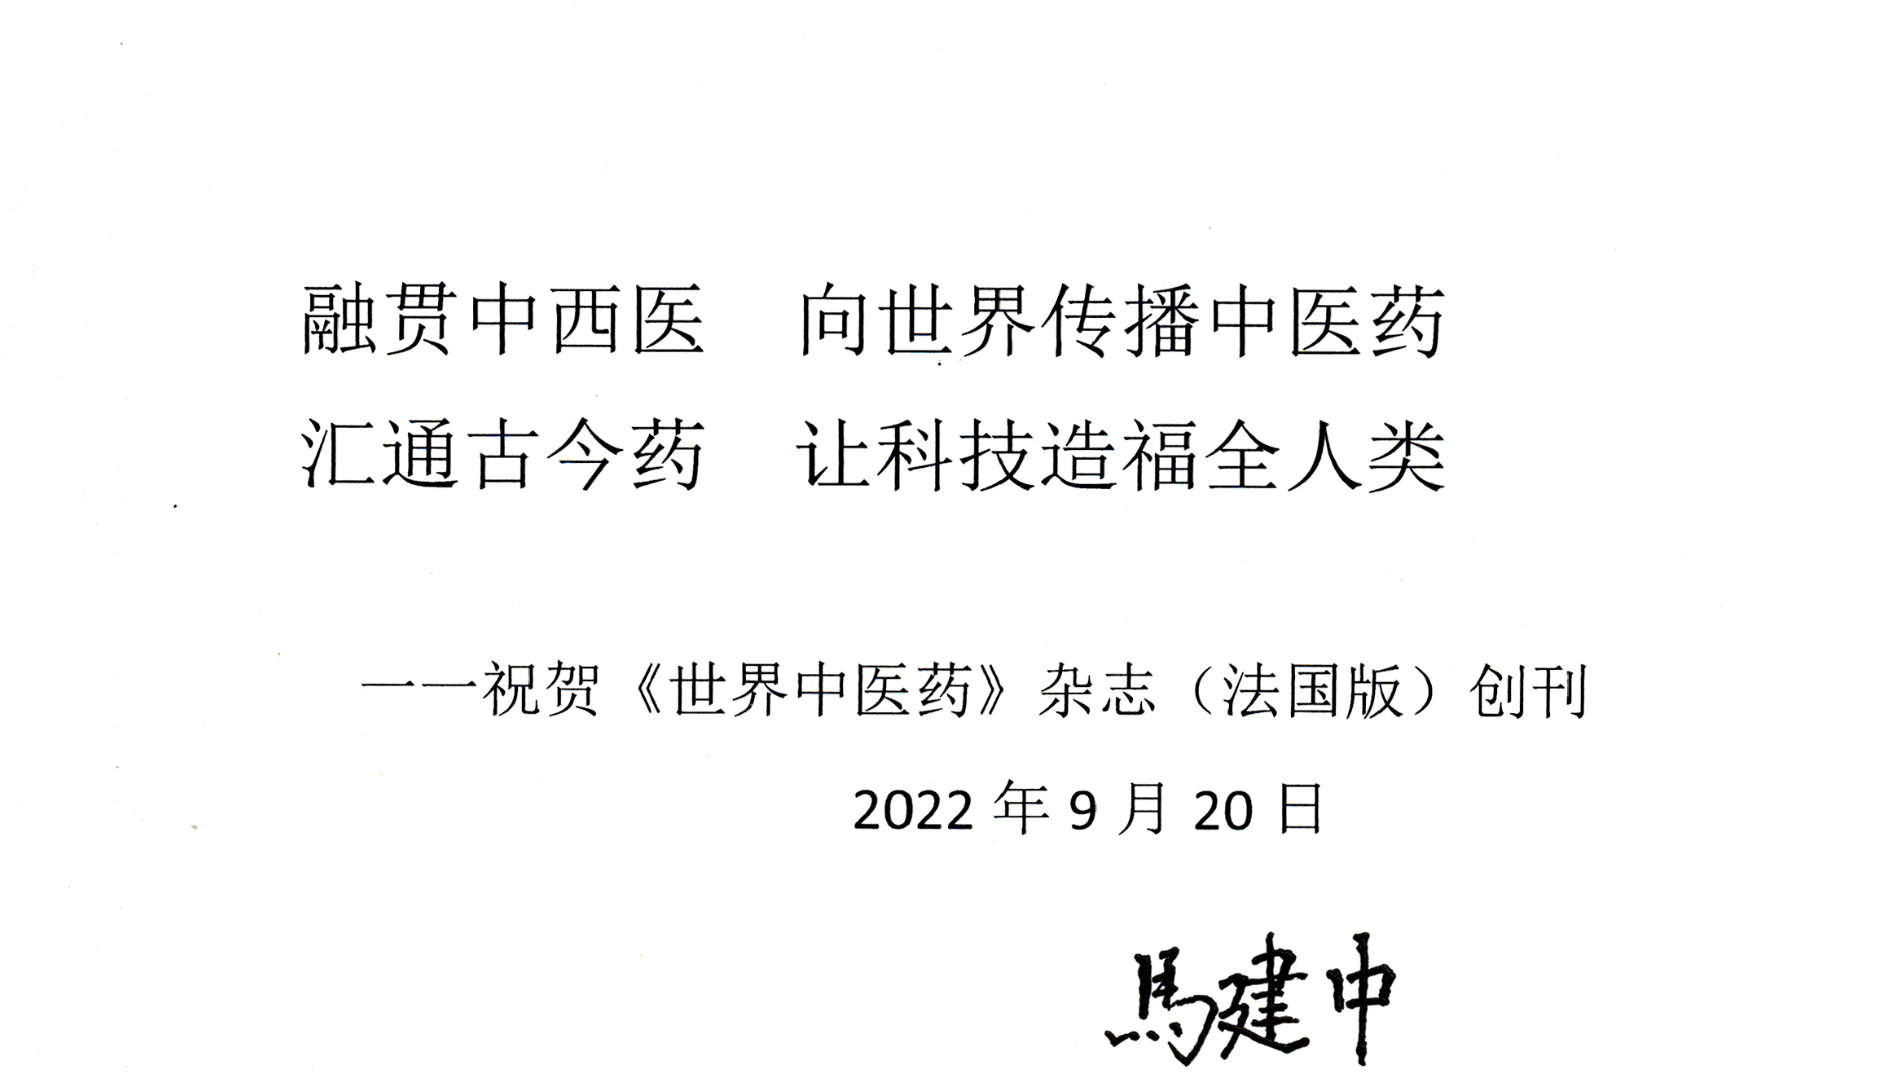 Voeu calligraphié de M. Ma Jianzhong, Président de la WFCMS